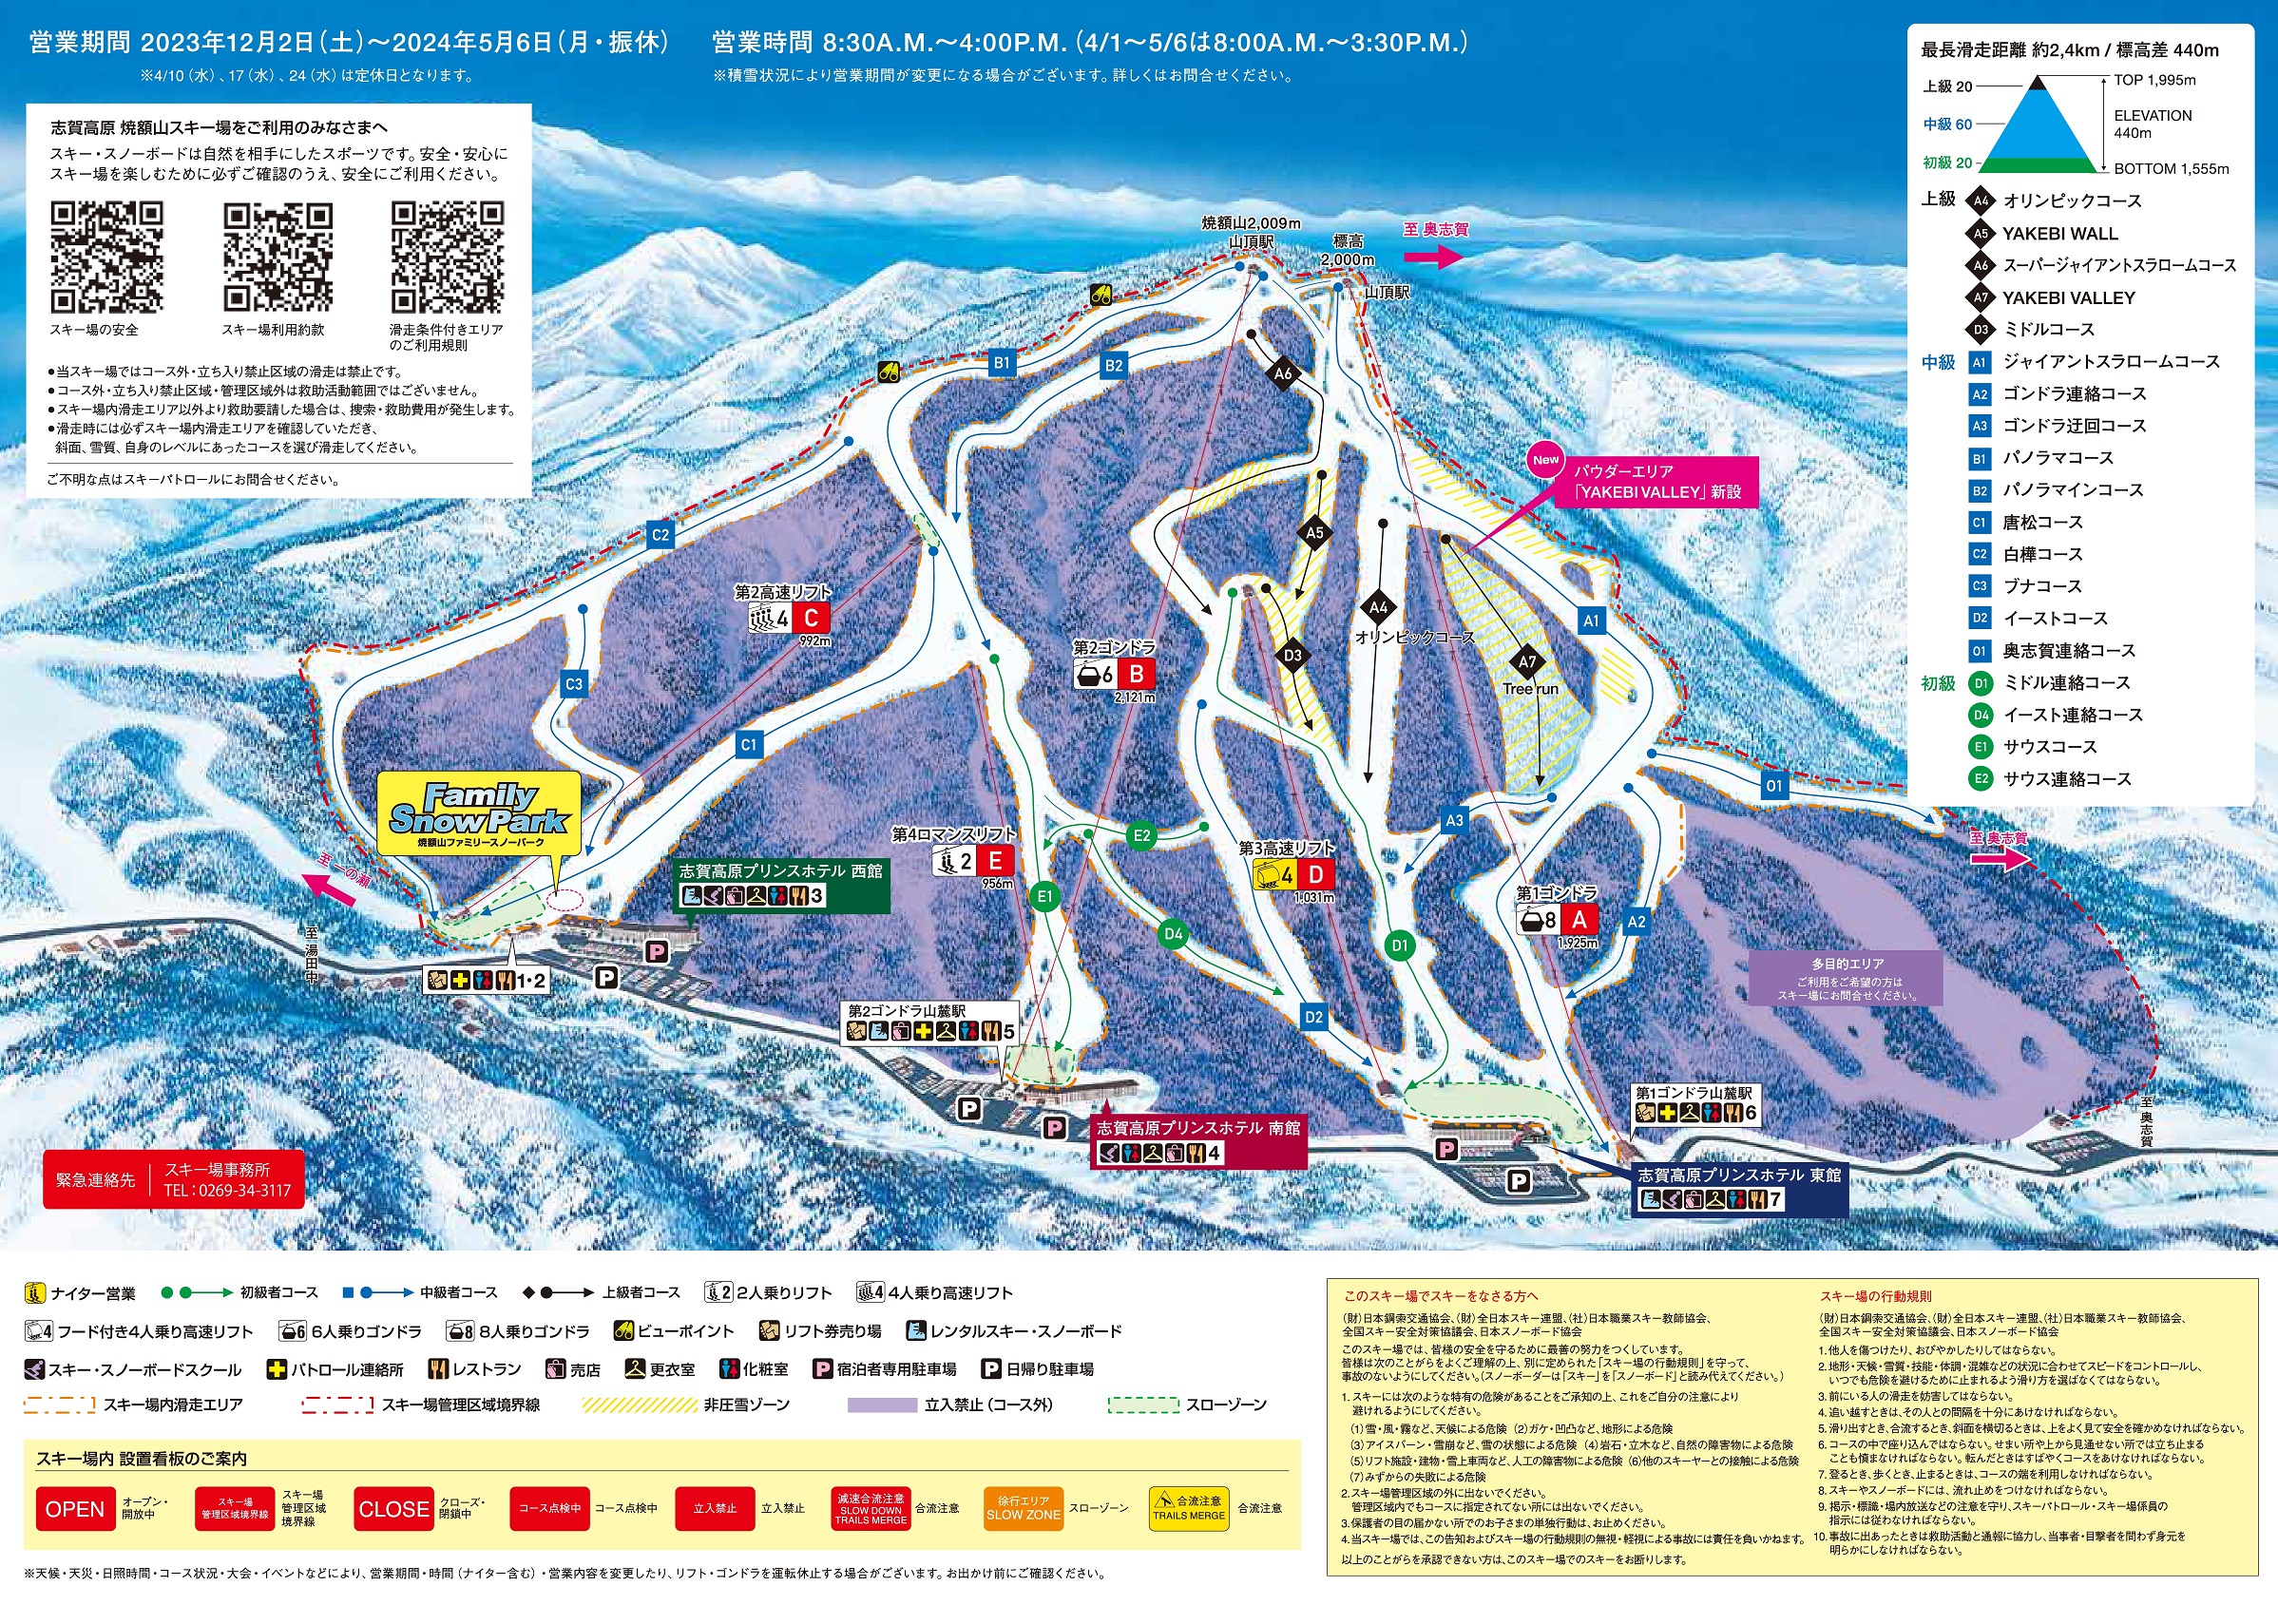 ゲレンデ コース 志賀高原 焼額山スキー場